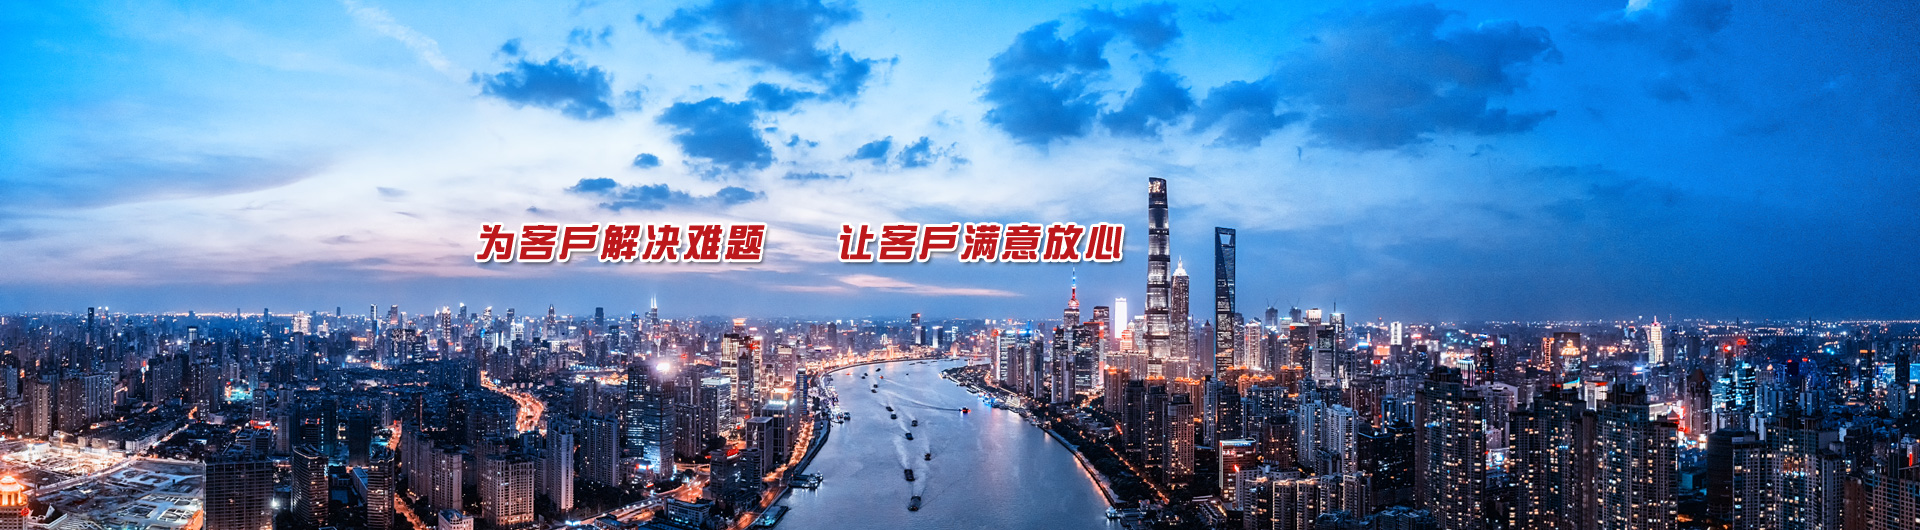 上海晶珂机电设备有限公司